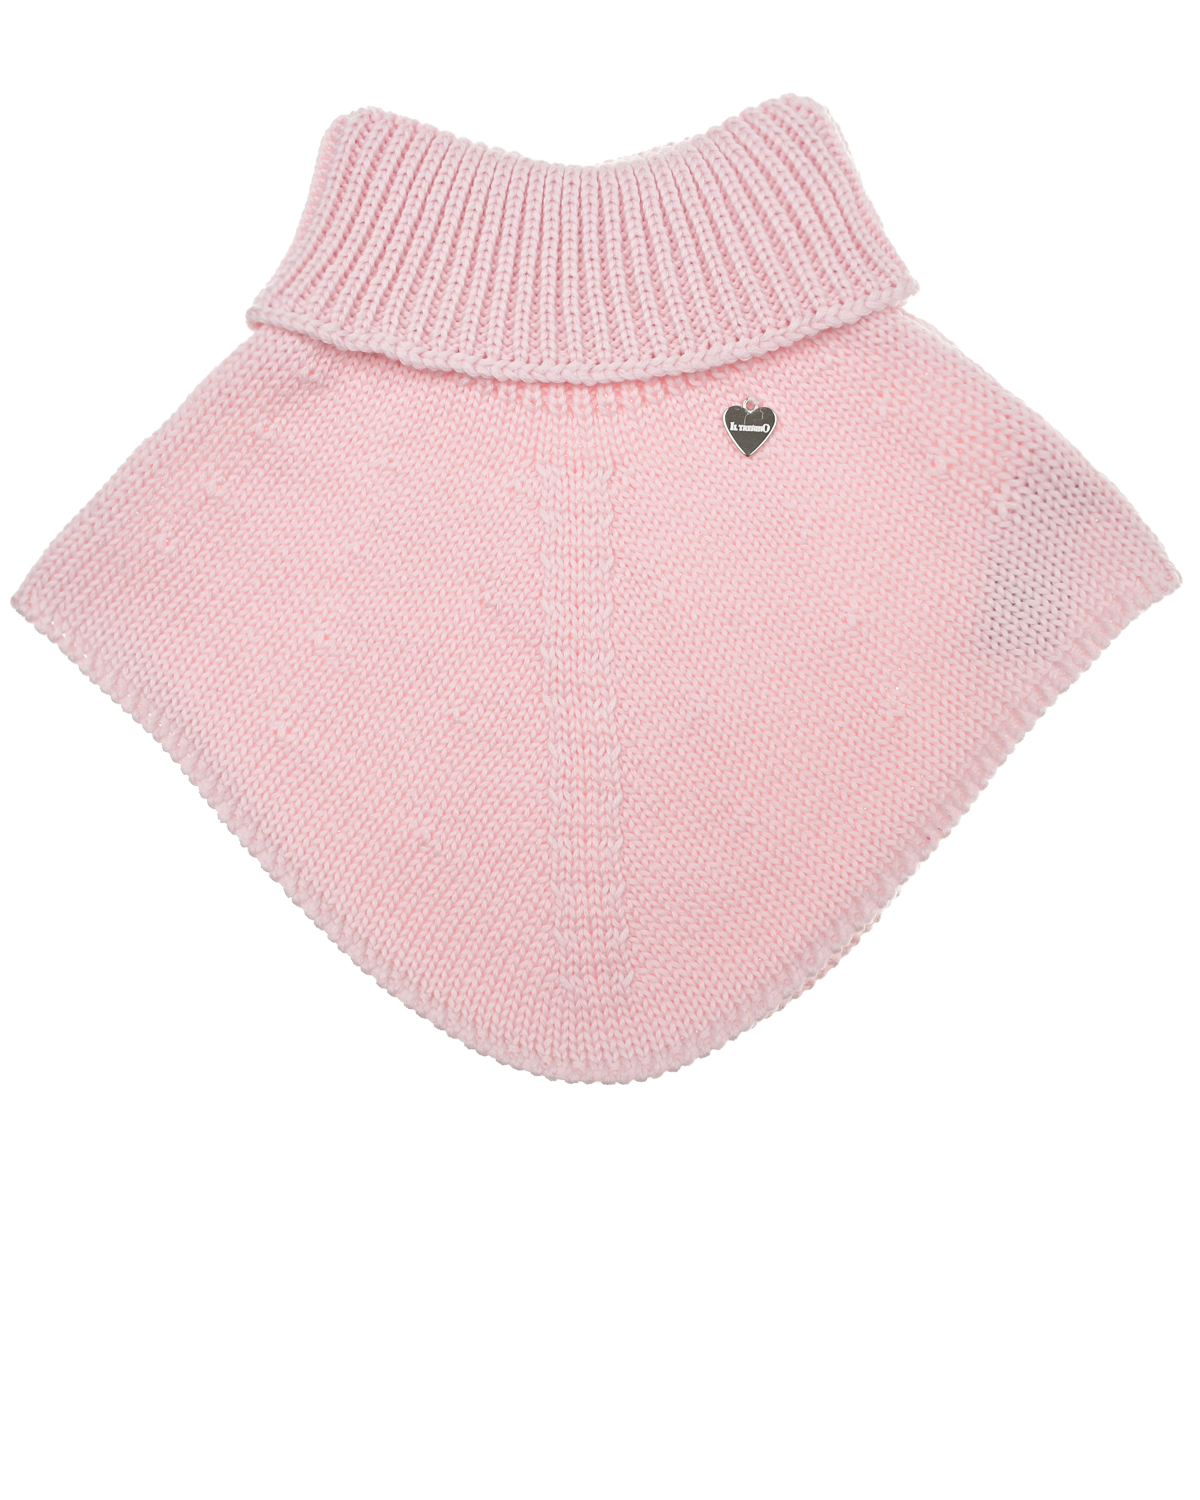 Базовый розовый шарф-горло Il Trenino детский, размер unica